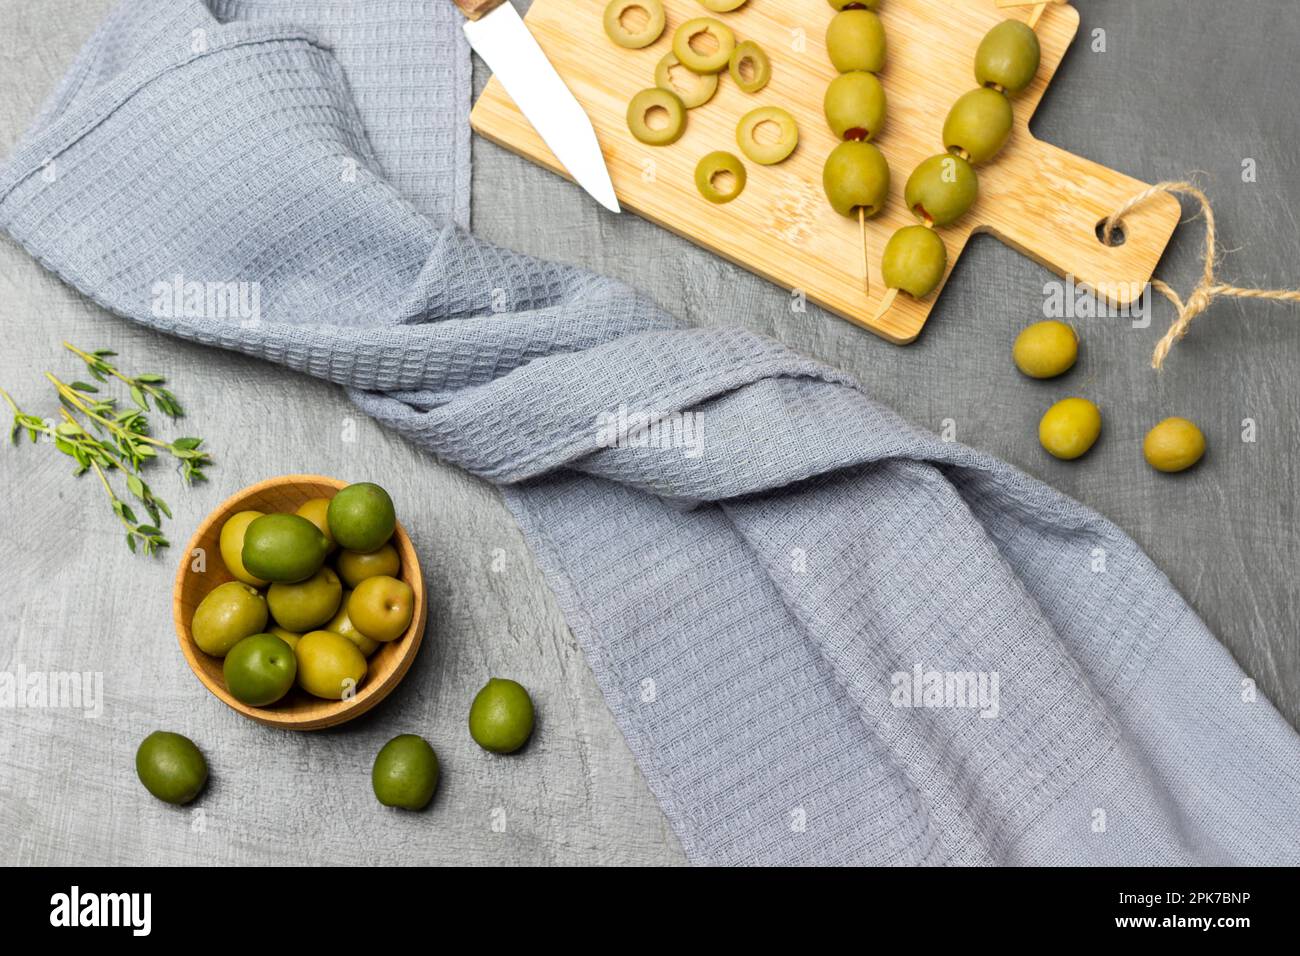 Grüne Oliven in einer Holzschüssel. Geschnittene Oliven und Messer auf dem Schneidebrett. Graue Serviette auf grauem Hintergrund. Flach verlegt. Stockfoto